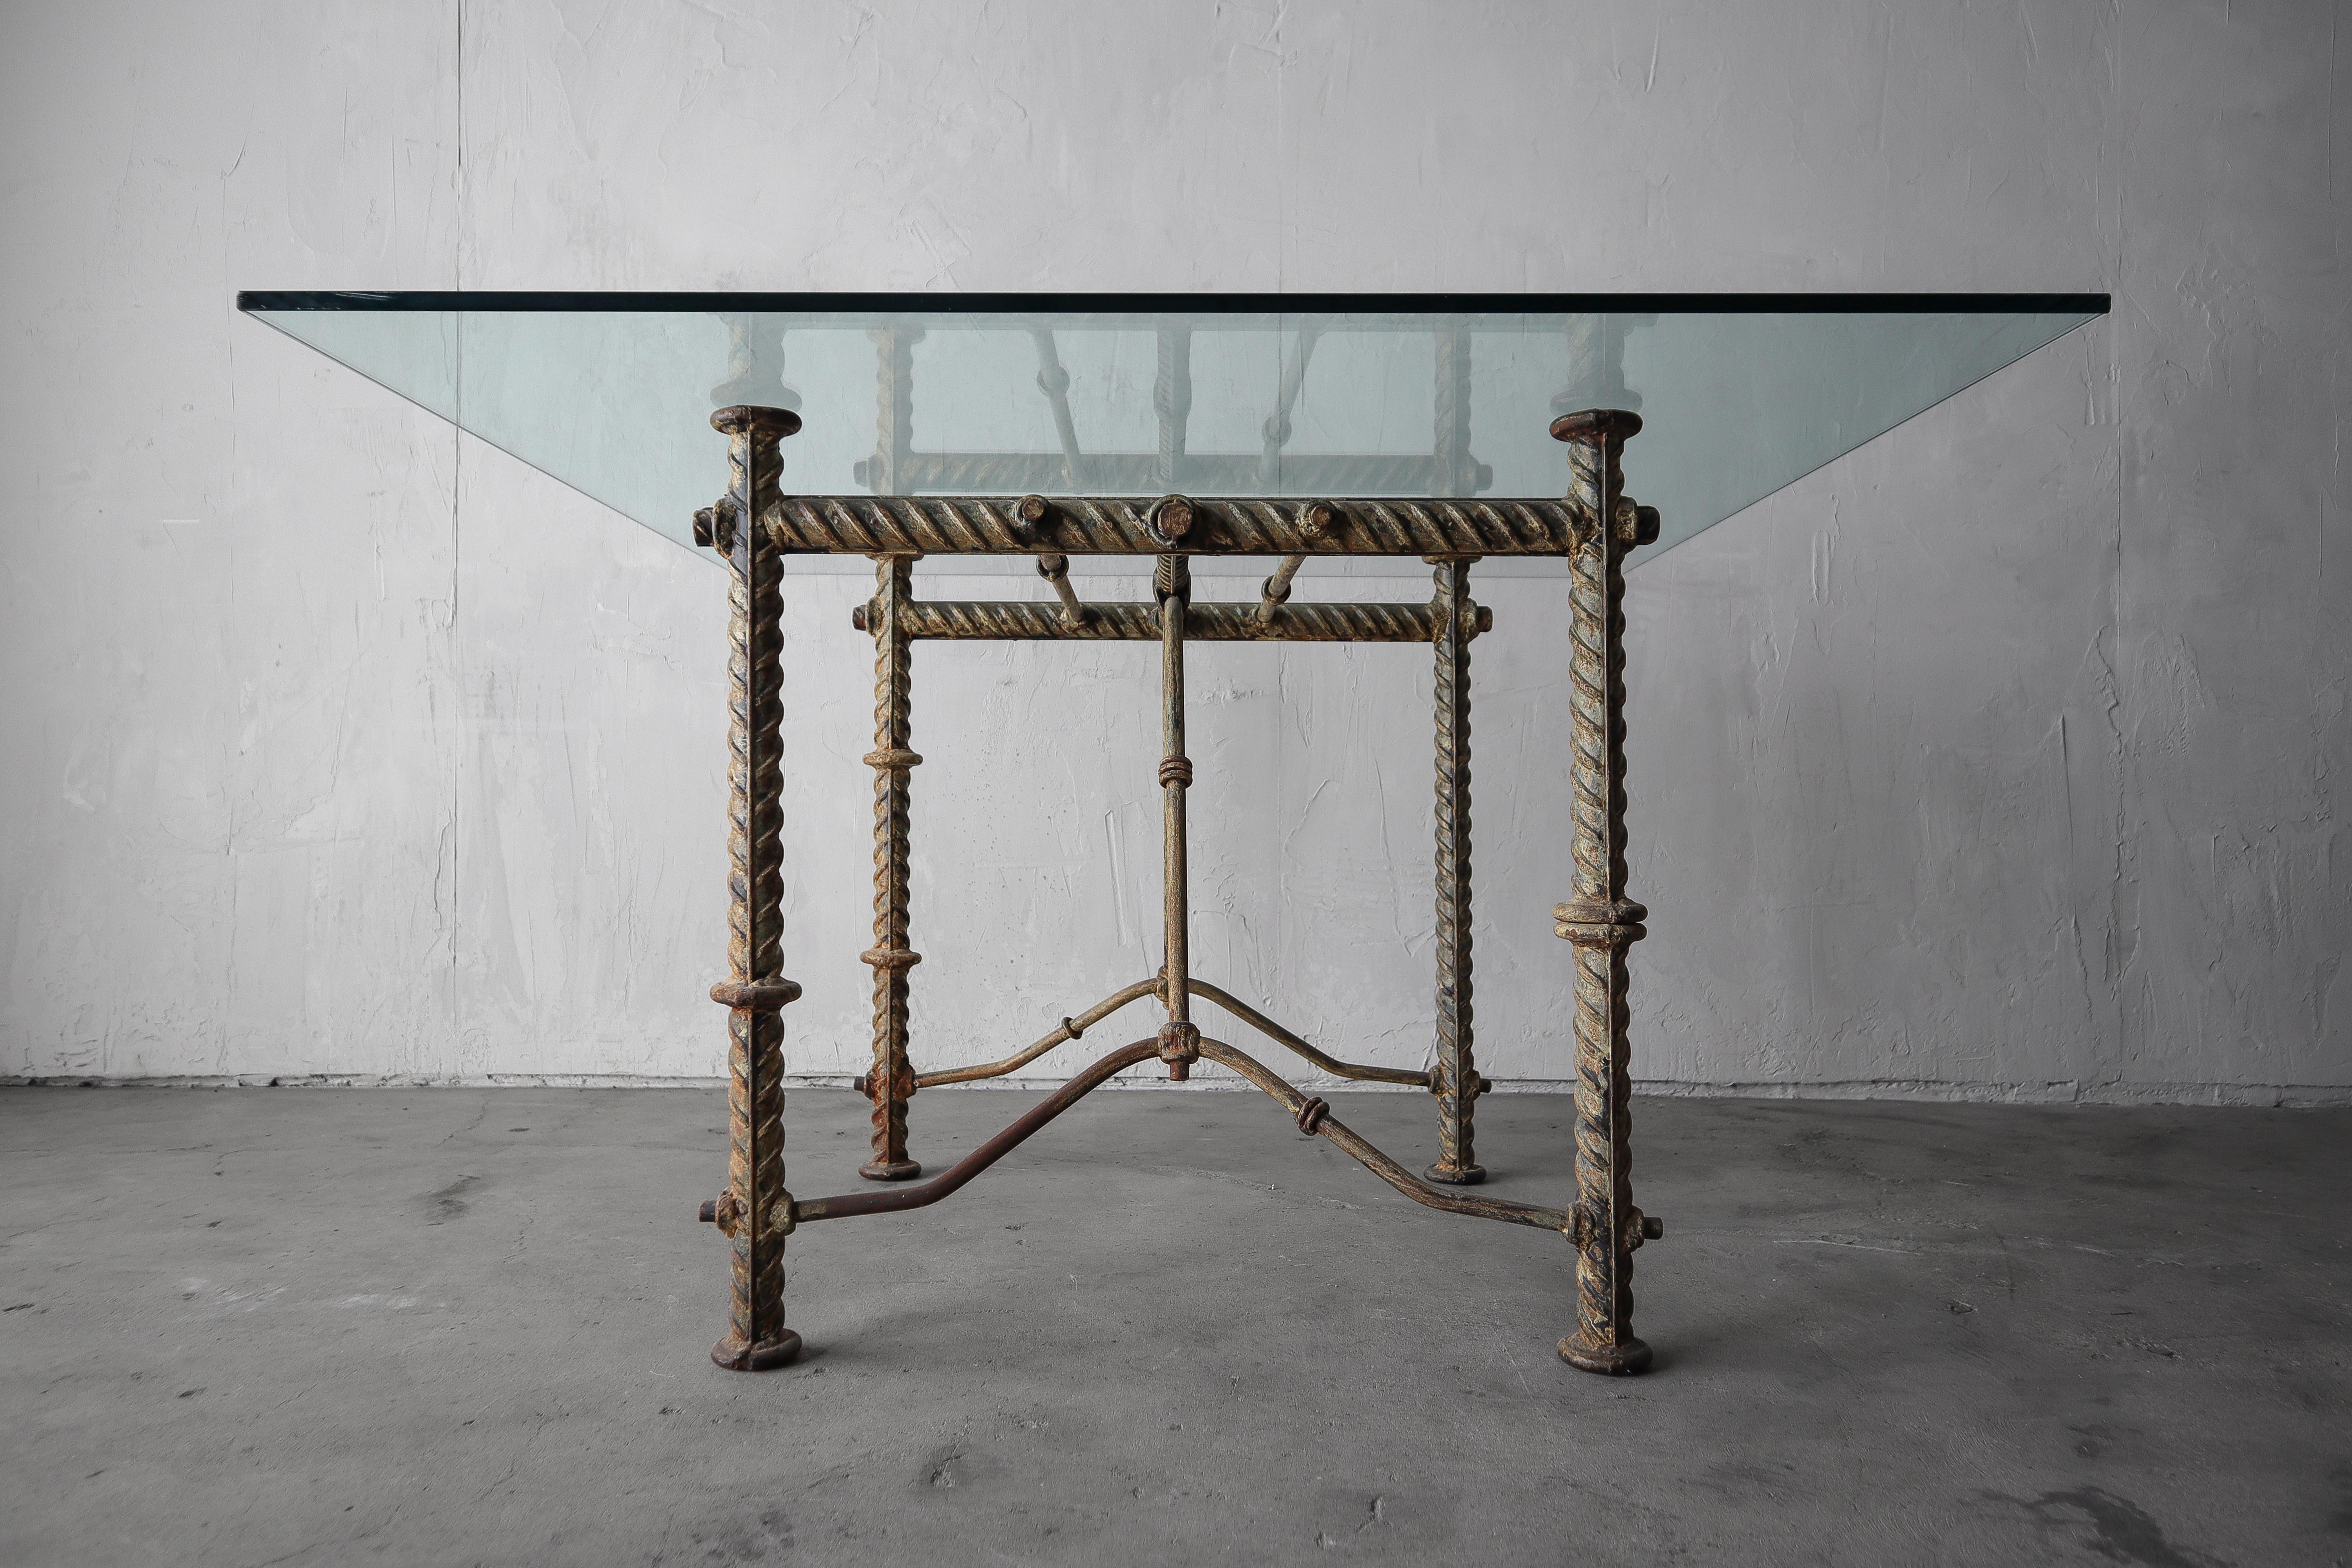 Substantielle base de table en fer forgé par Ilana Goor. Cette pièce est substantielle et unique, la base pèse facilement 75+lbs.  La table est de style brutaliste avec une construction de barres d'armature surdimensionnées, habituelle pour les